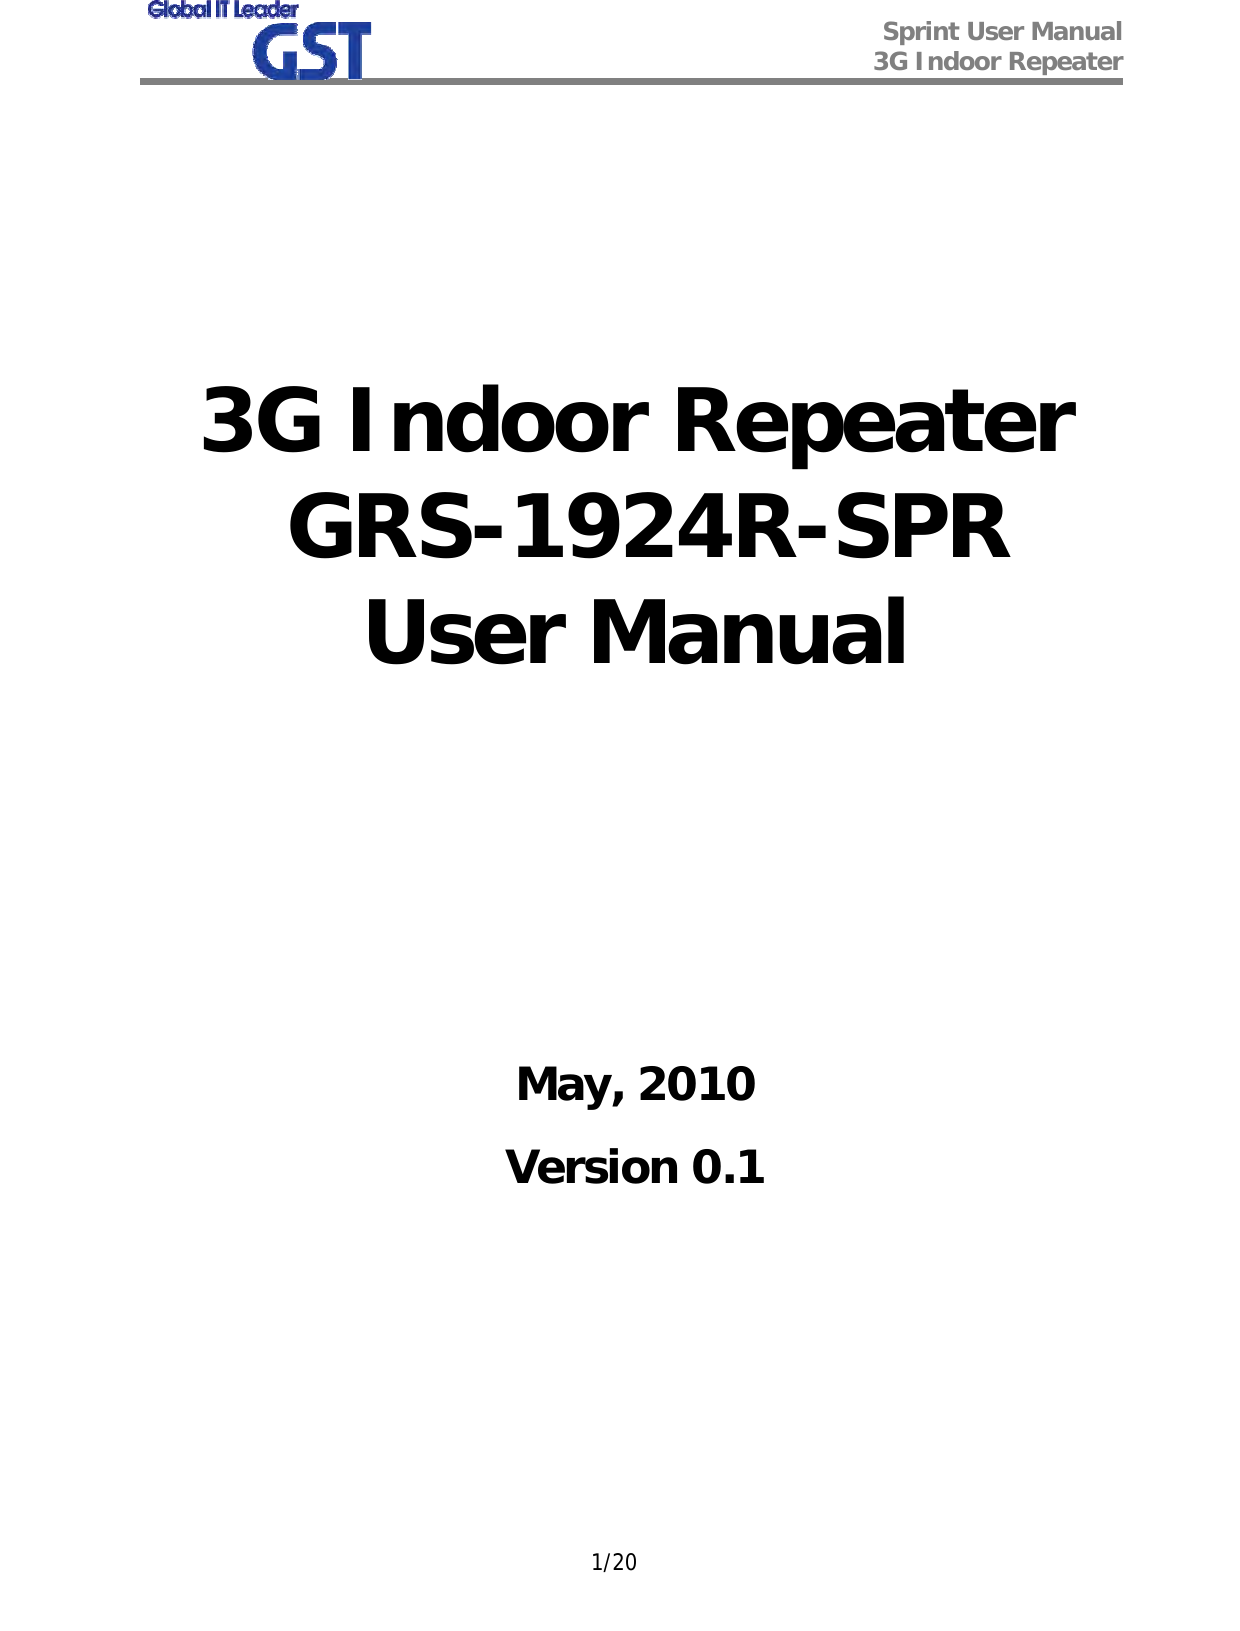  Sprint User Manual 3G Indoor Repeater   1/20       3G Indoor Repeater  GRS-1924R-SPR User Manual          May, 2010 Version 0.1        